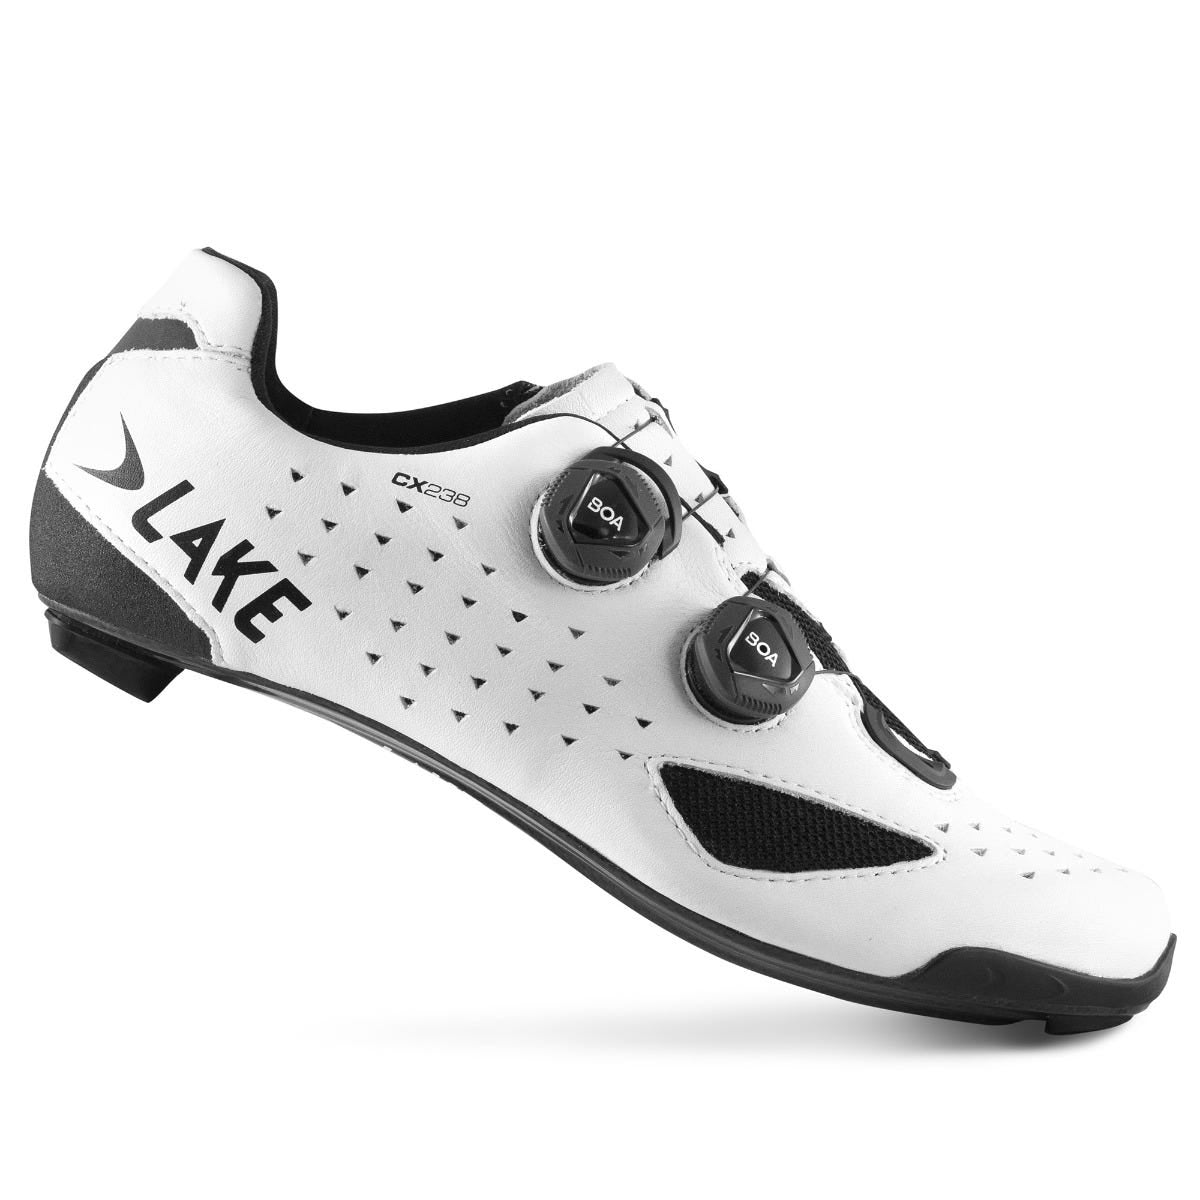 Lake CX238 Carbon Men's SPD Road Cycling Shoes White - EU 37